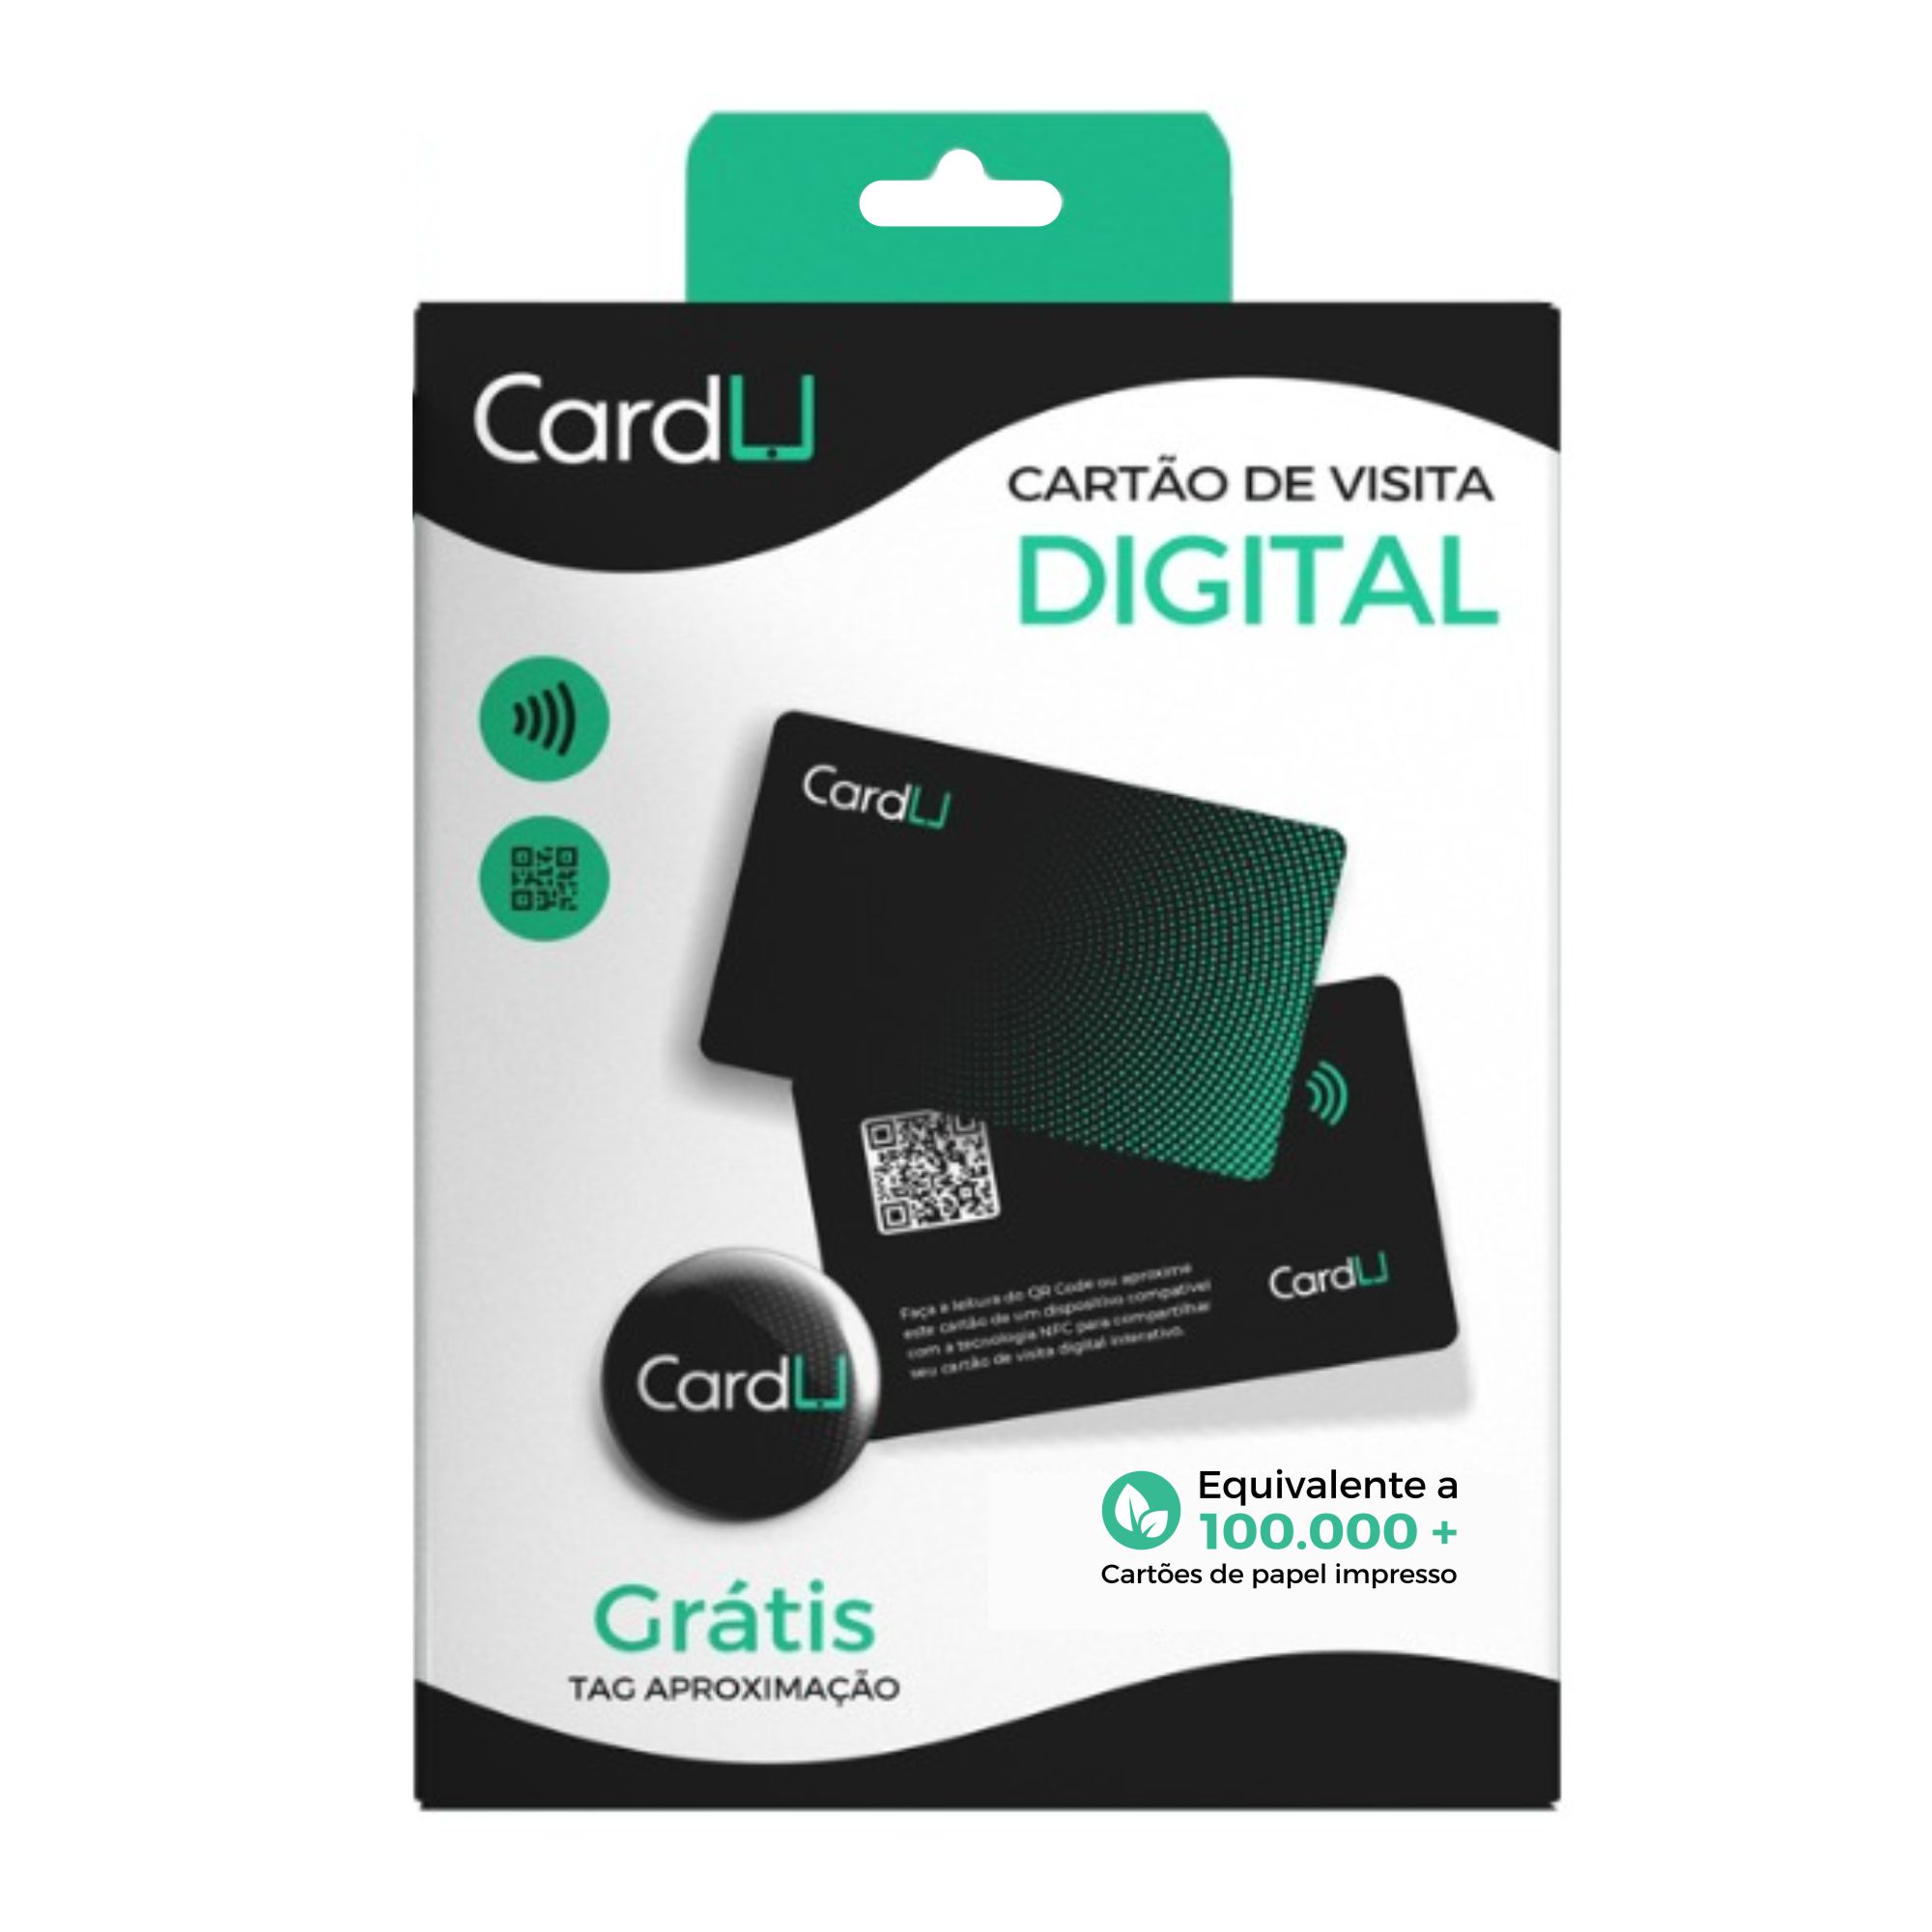 cartão de visita digital por aproximação, kit revendedor cartão e tag nfc para lojas e representantes